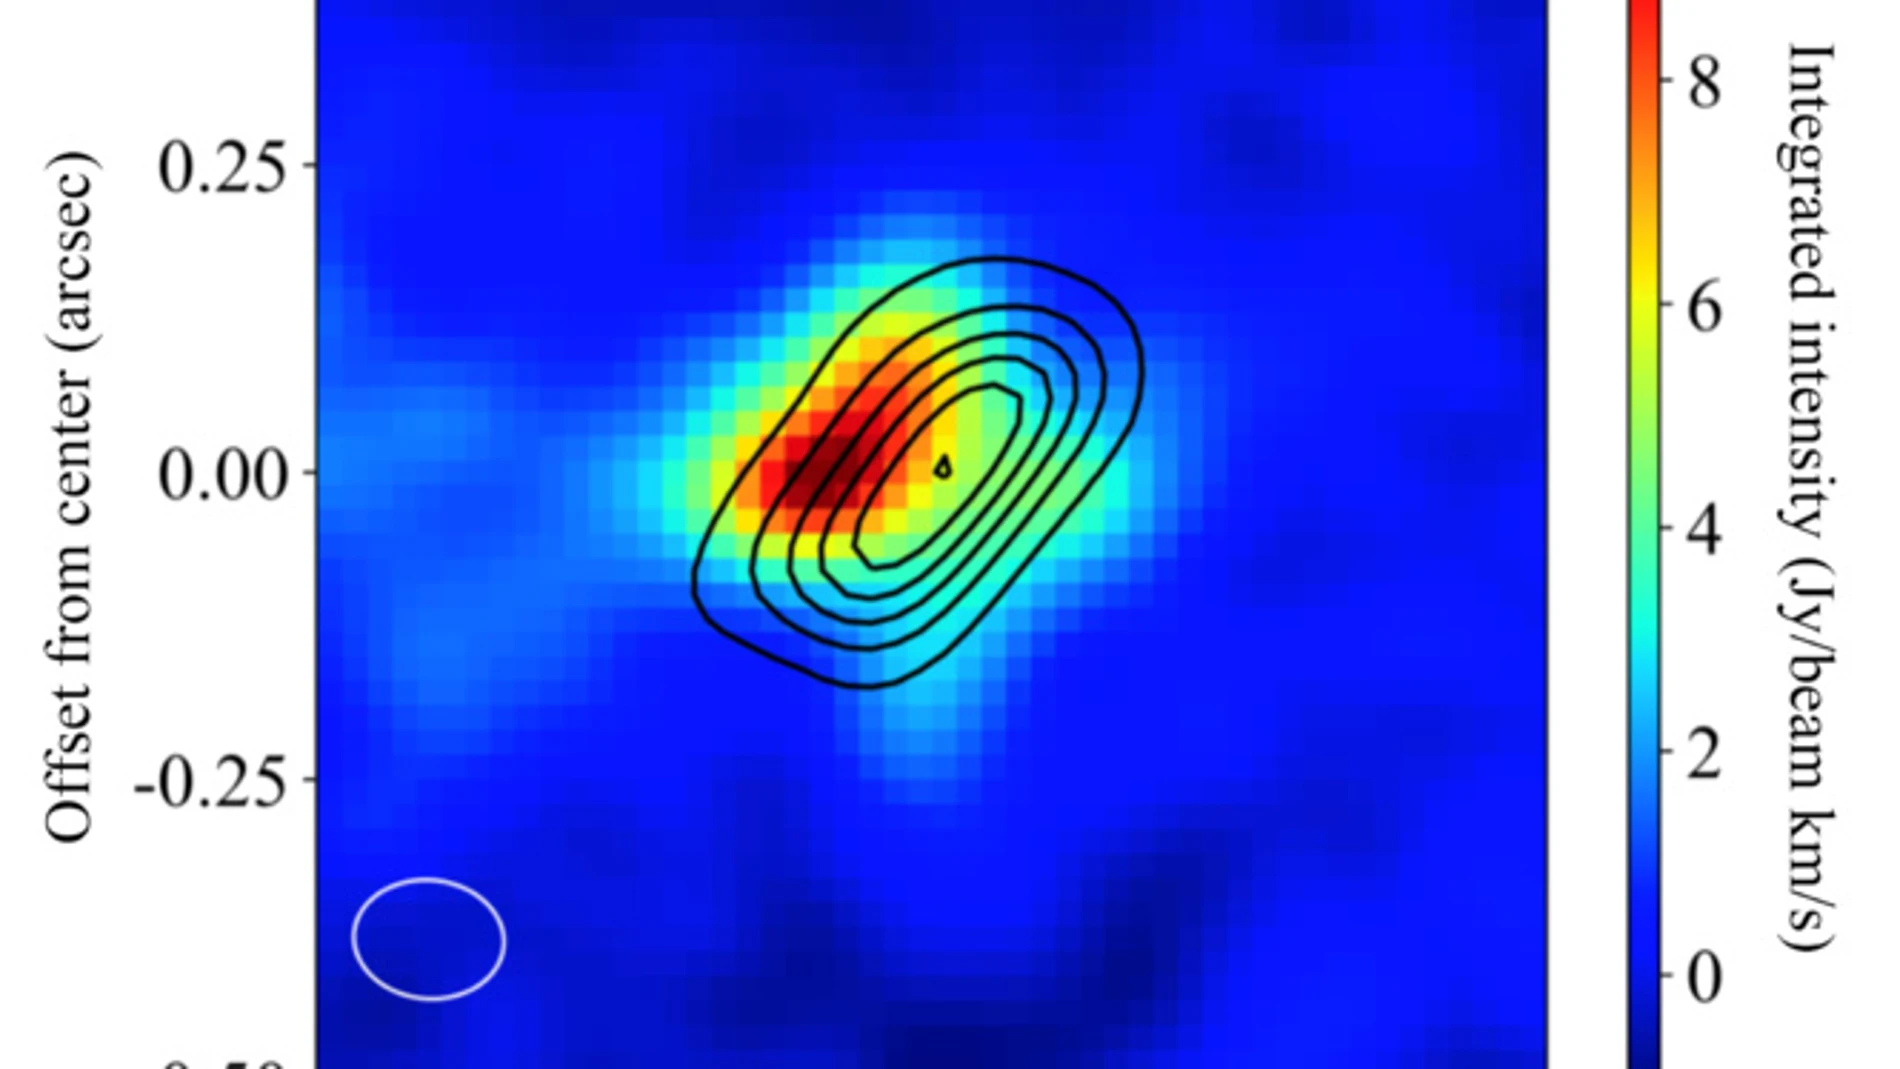 Imagen de la distribución de las moléculas de óxido de aluminio (coloridas) y de las partículas de polvo calientes (silueta) obtenida por ALMA. El chorro molecular (que no se muestra en esta imagen) se extiende desde el centro hacia las esquinas superior izquierda e inferior derecha. Créditos: ALMA (ESO/NAOJ/NRAO), Tachibana et al.